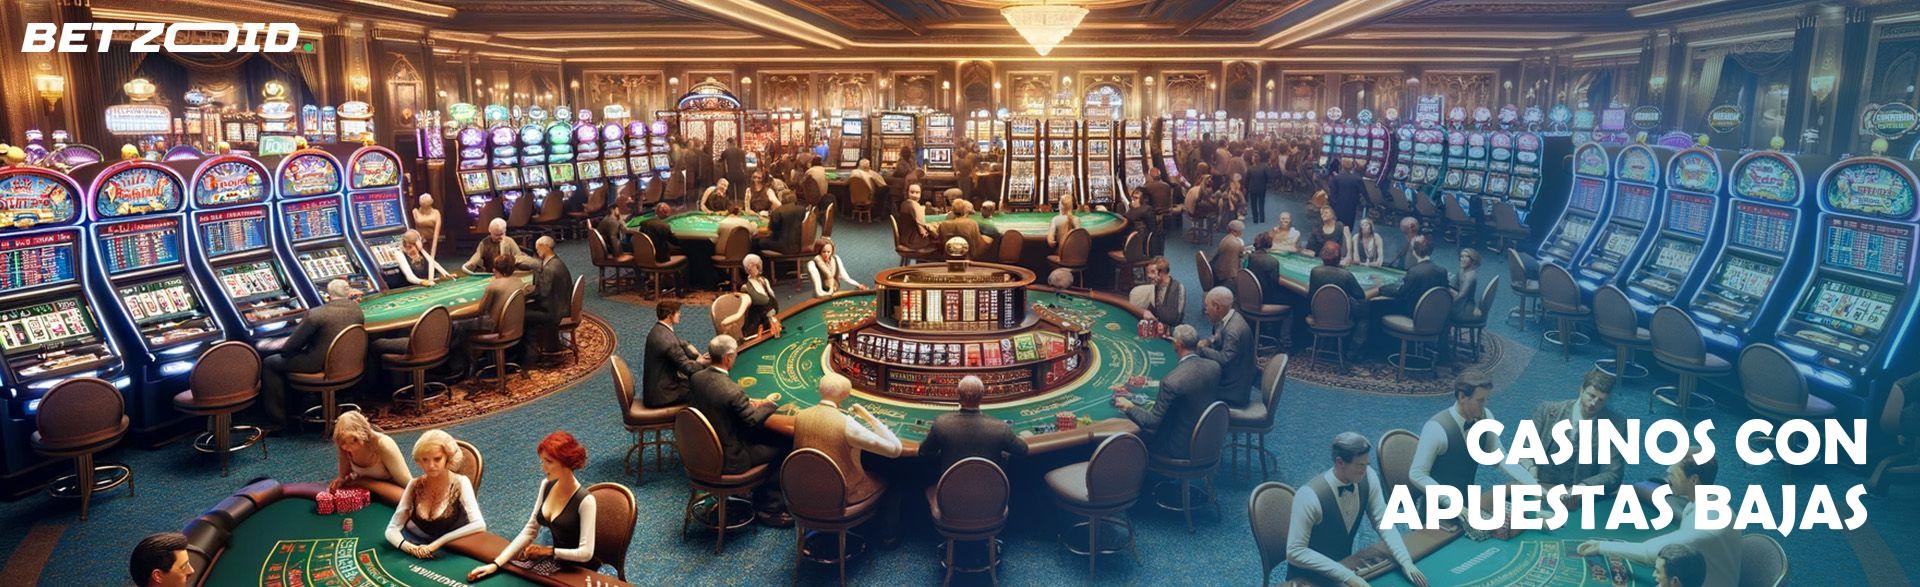 Casinos con Apuestas Bajas.